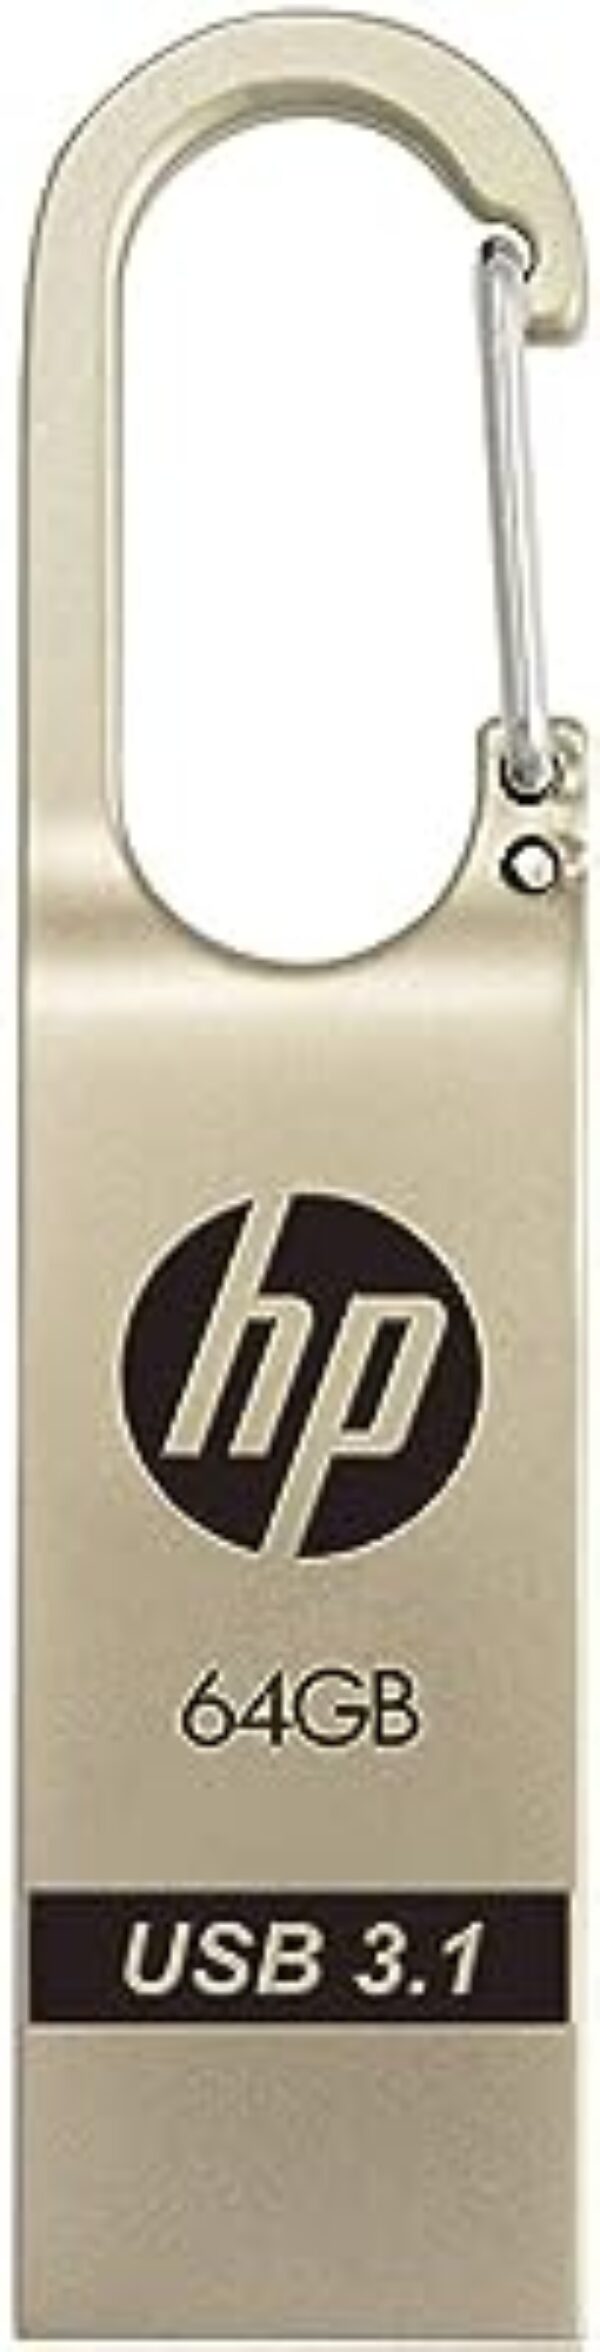 HP USB 3.1 Flash Drive 64GB